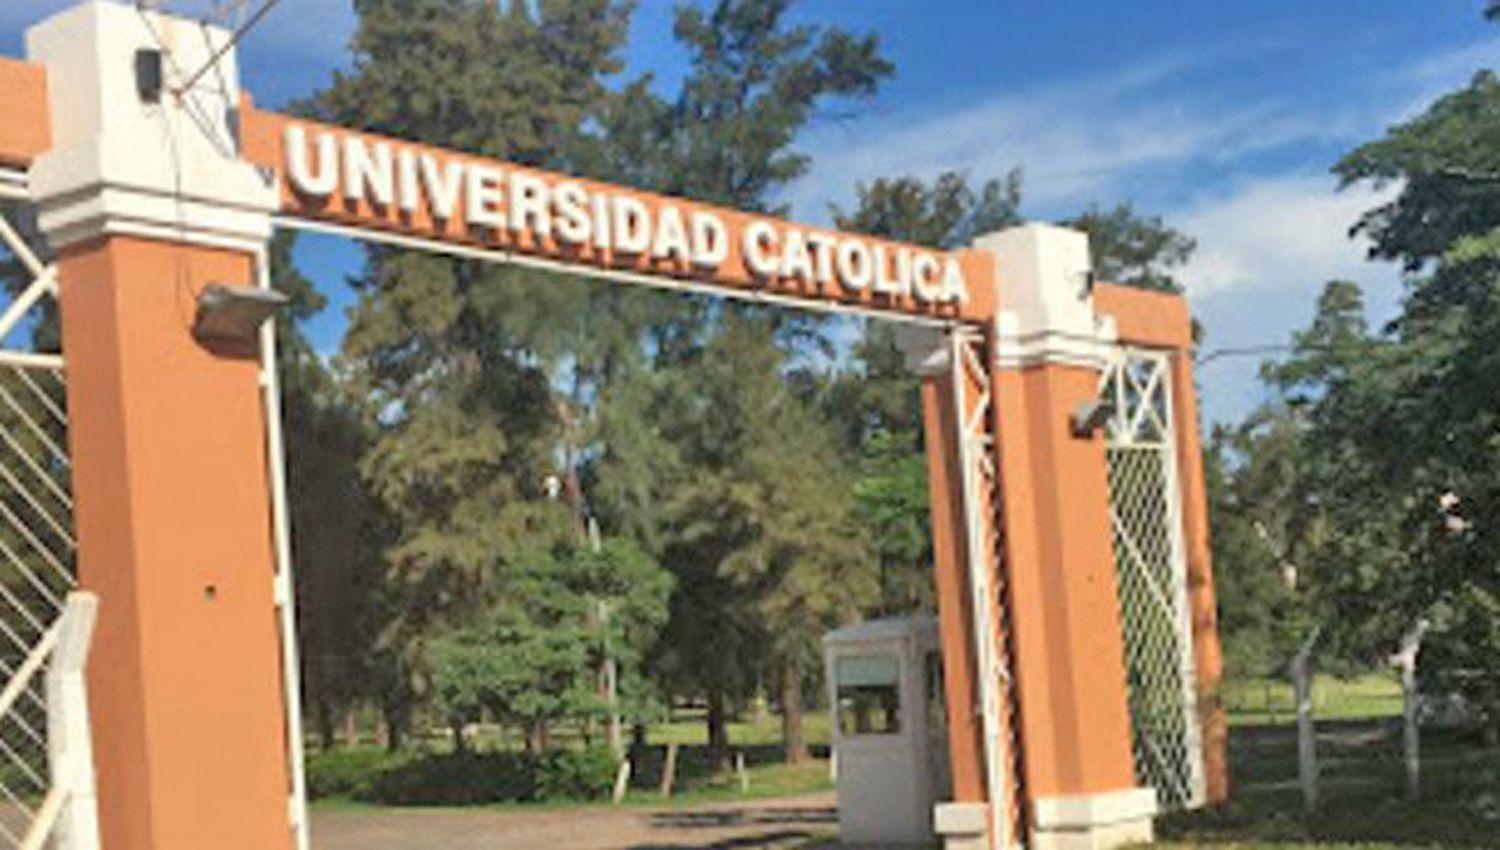 La Universidad Catoacutelica de Santiago del Estero ya inscribe para el ingreso anticipado